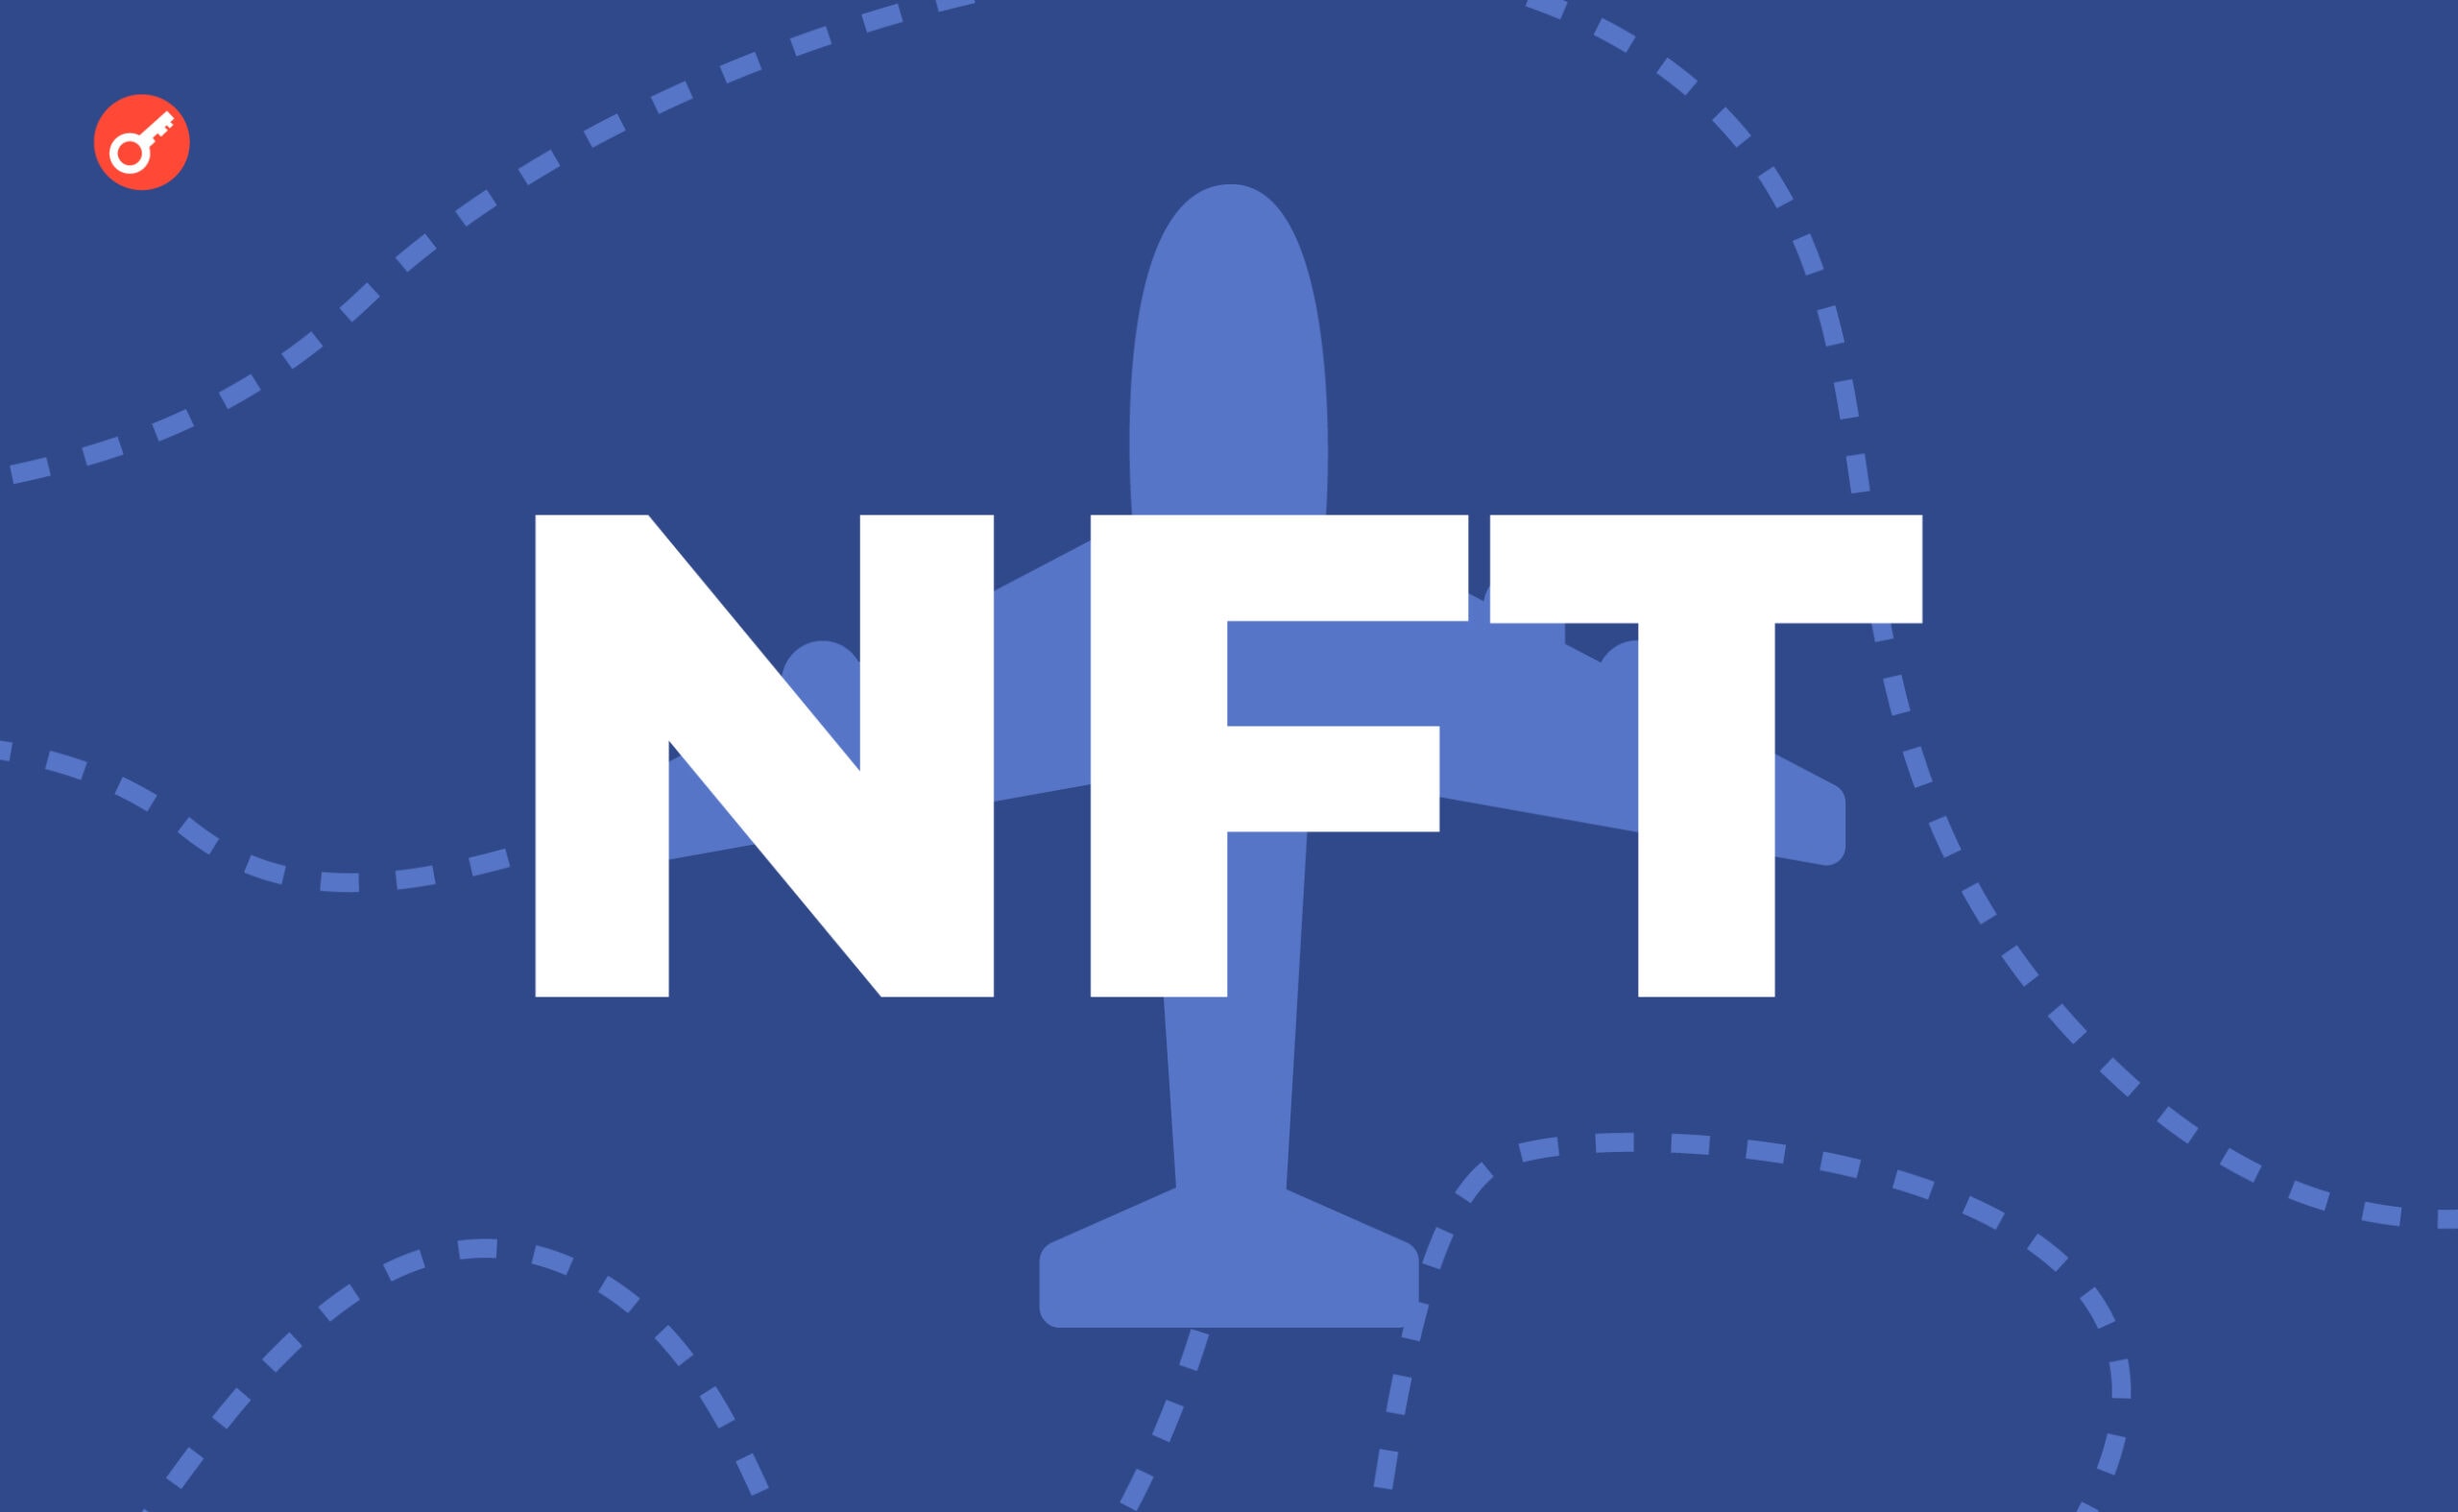 Клиент покупает электронный билет на сайте Flybondi за фиат. Затем TravelX выпускает его в формате NFT. Для управления токеном достаточно иметь учетную запись на сервисе Ticket 3.0.